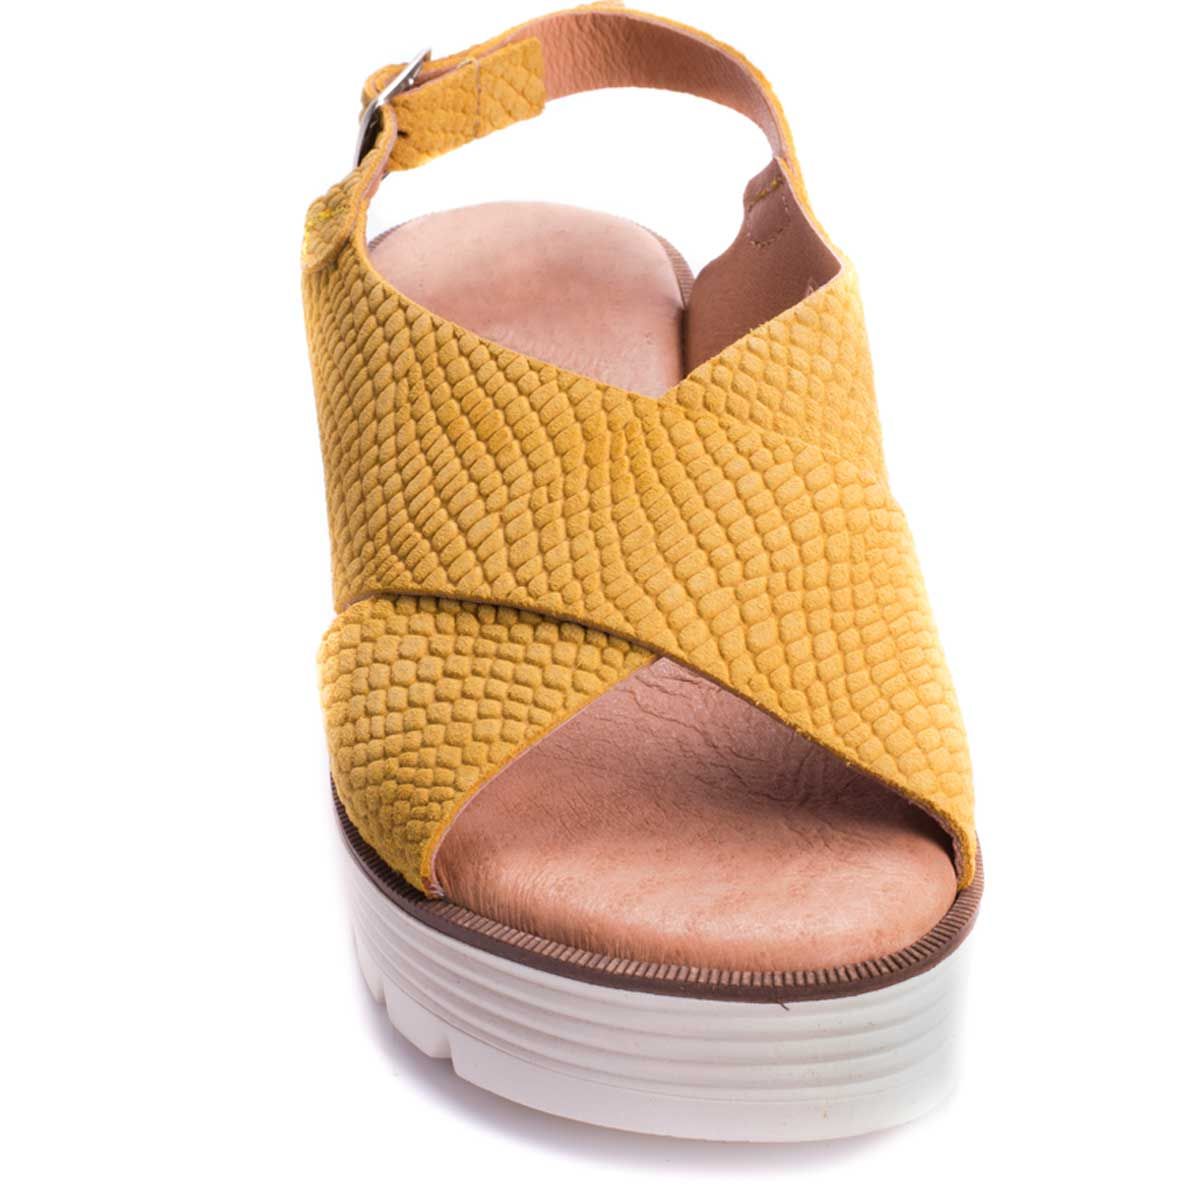 Purapiel Wedge Sandal in Brown